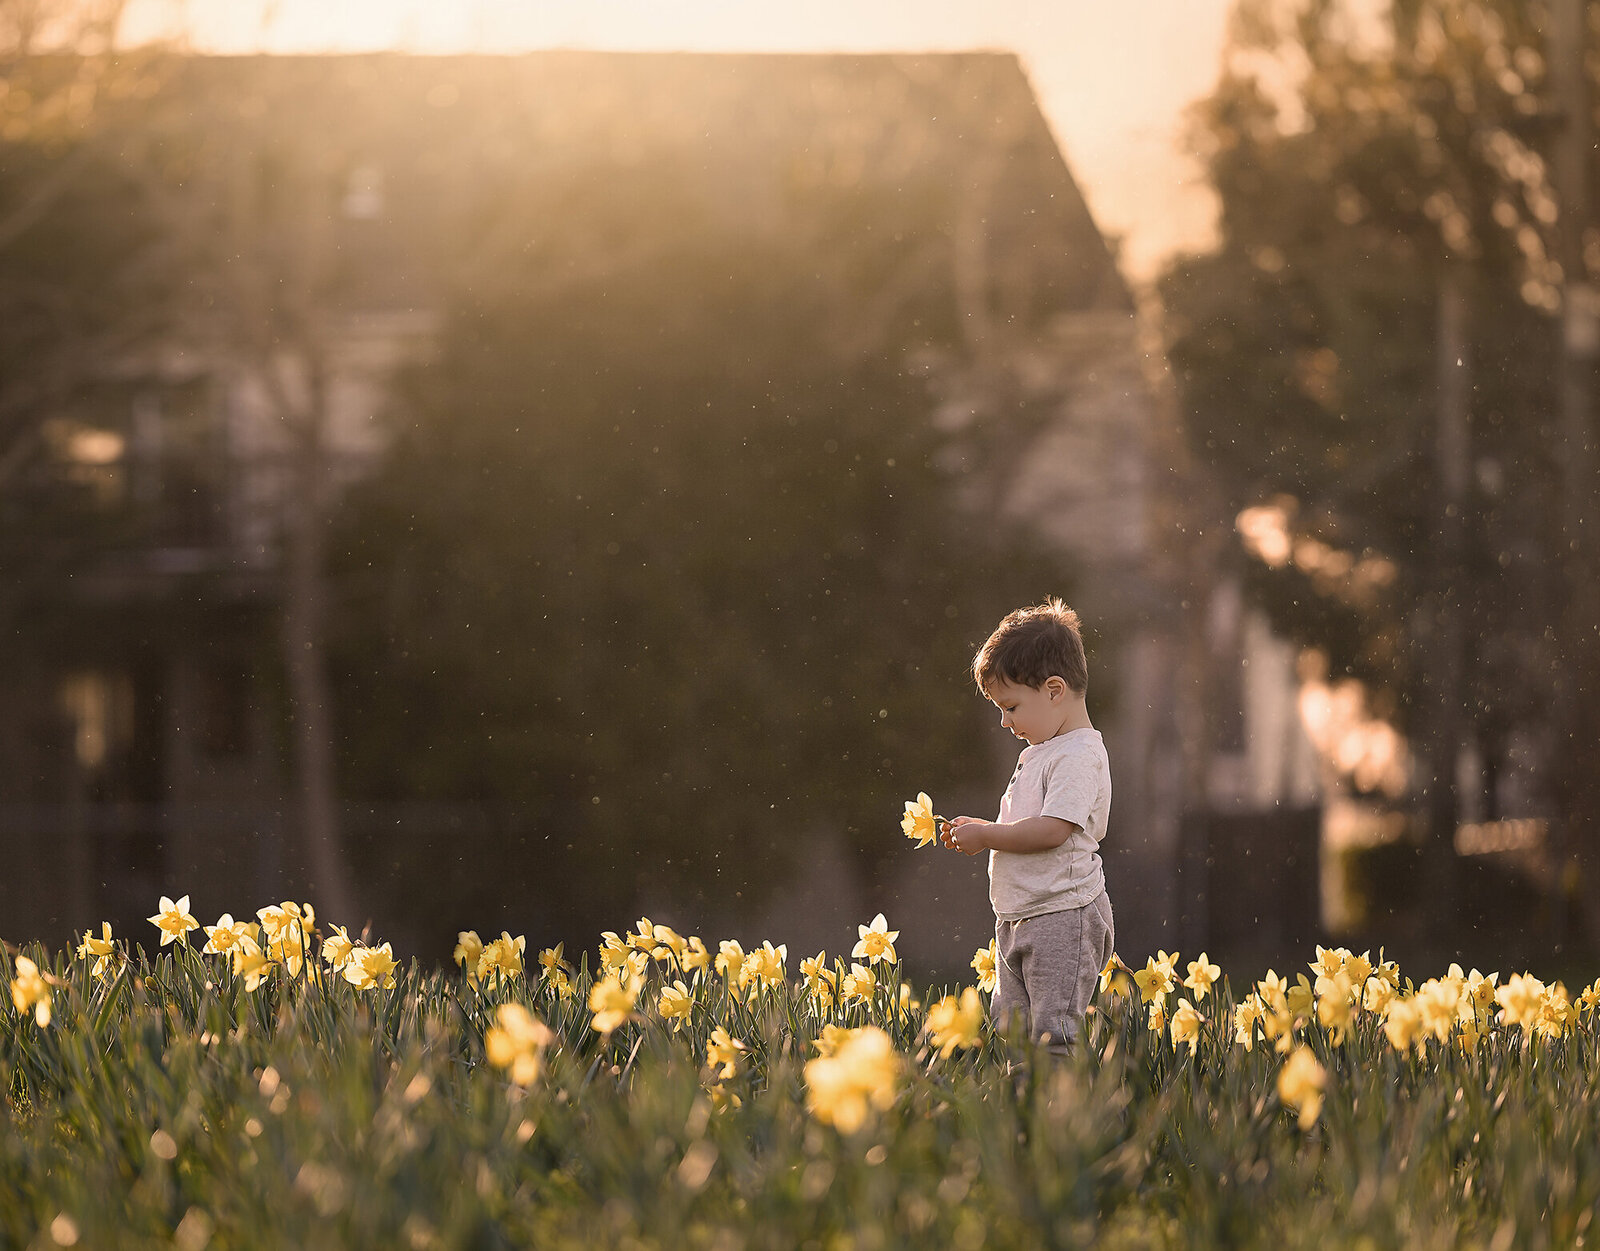 Child in a field of Daffodils in Norfolk by Iya Estrellado, a photographer